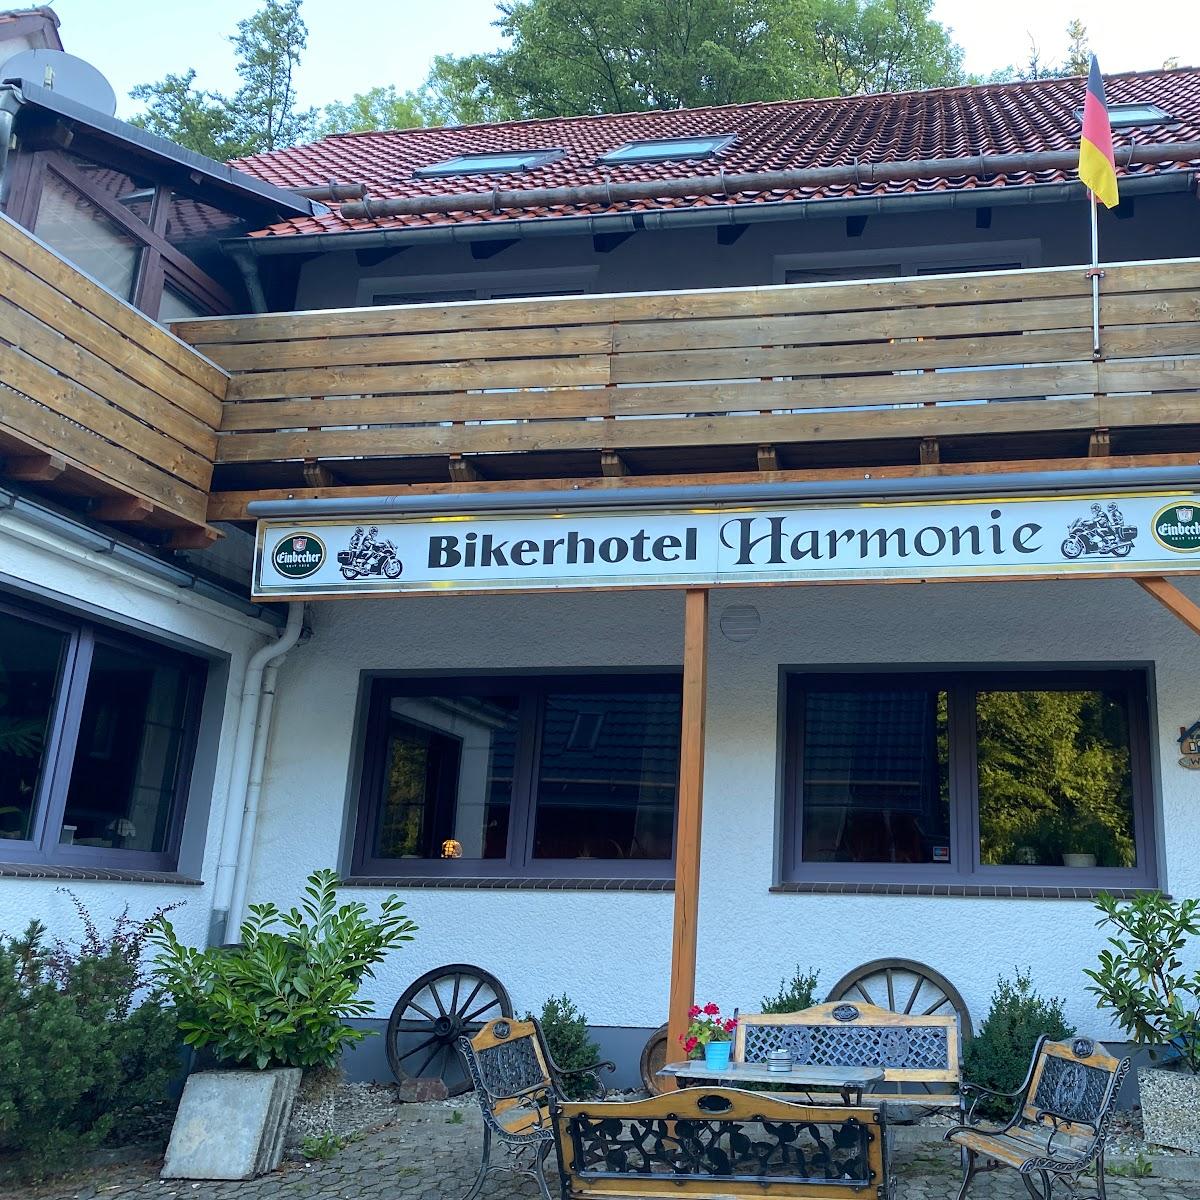 Restaurant "Biker-Hotel Harmonie" in Bad Grund (Harz)